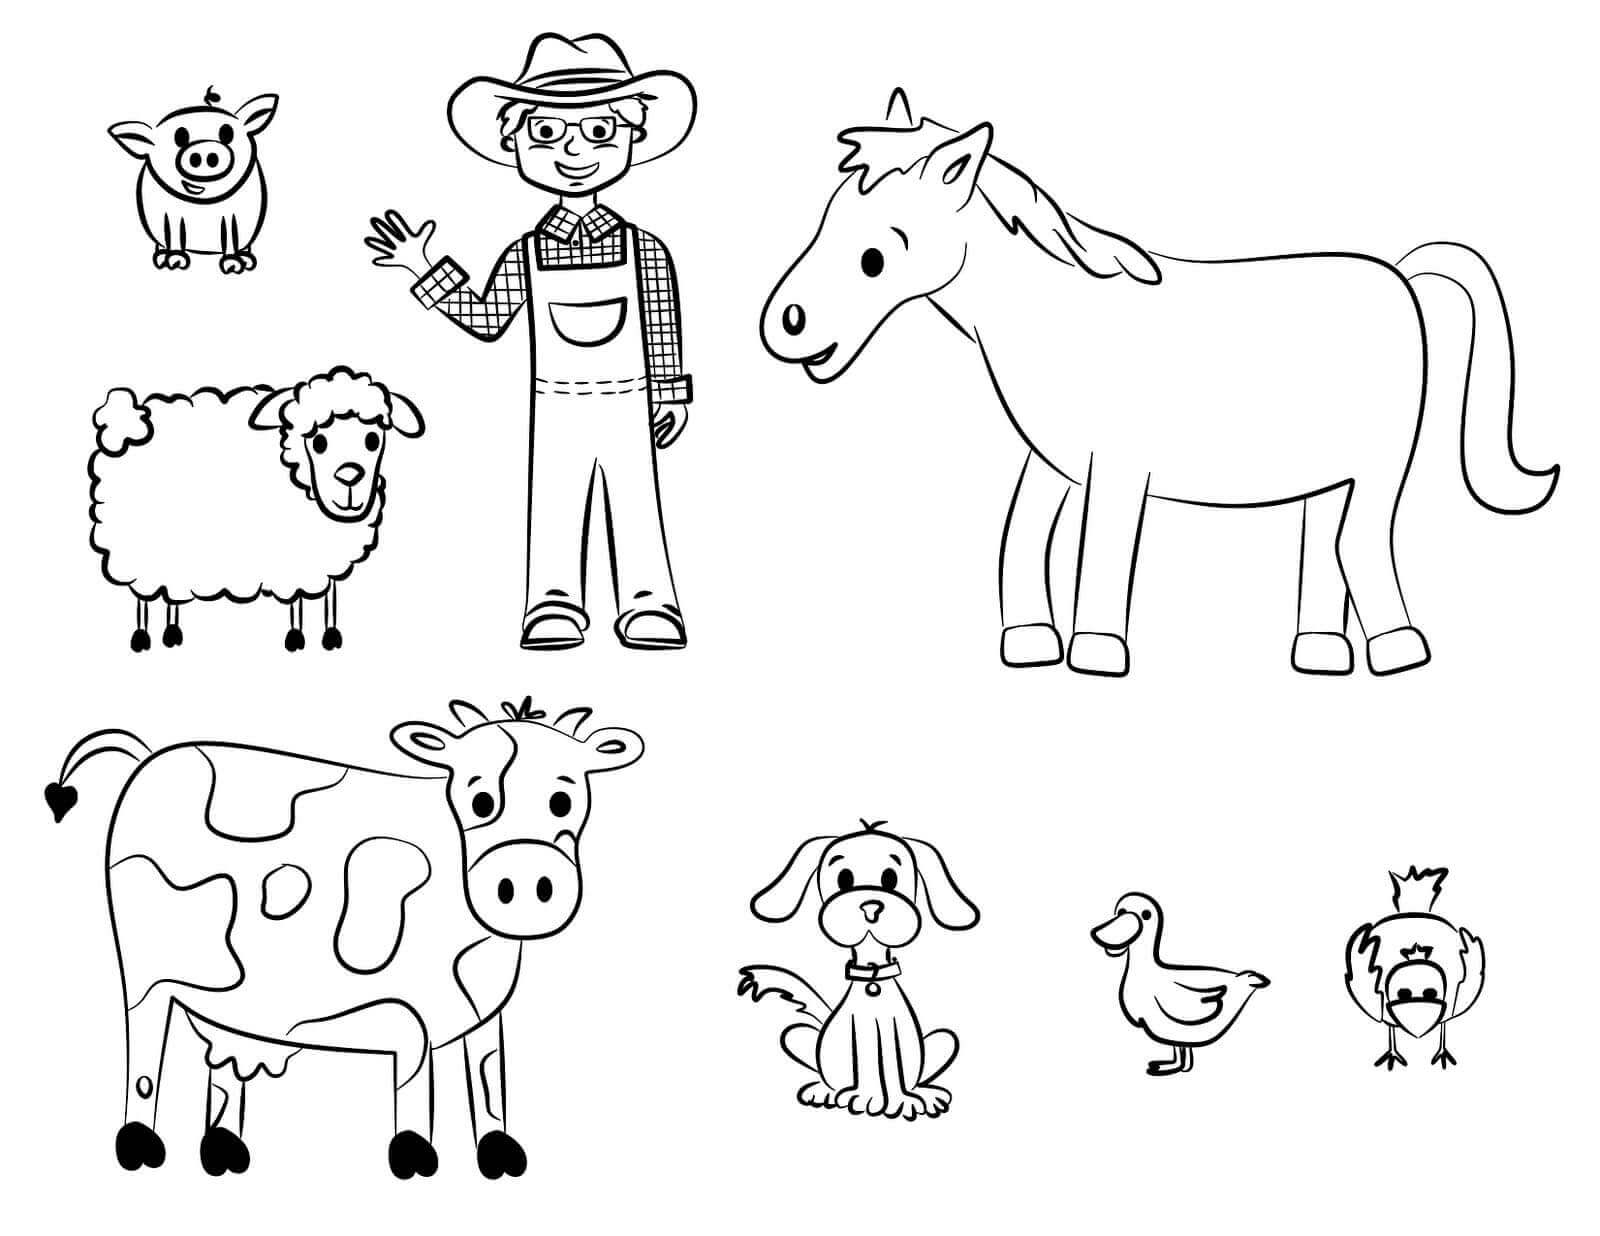 Çiftlikteki Çiftçi ve hayvan boyama sayfası boyama online